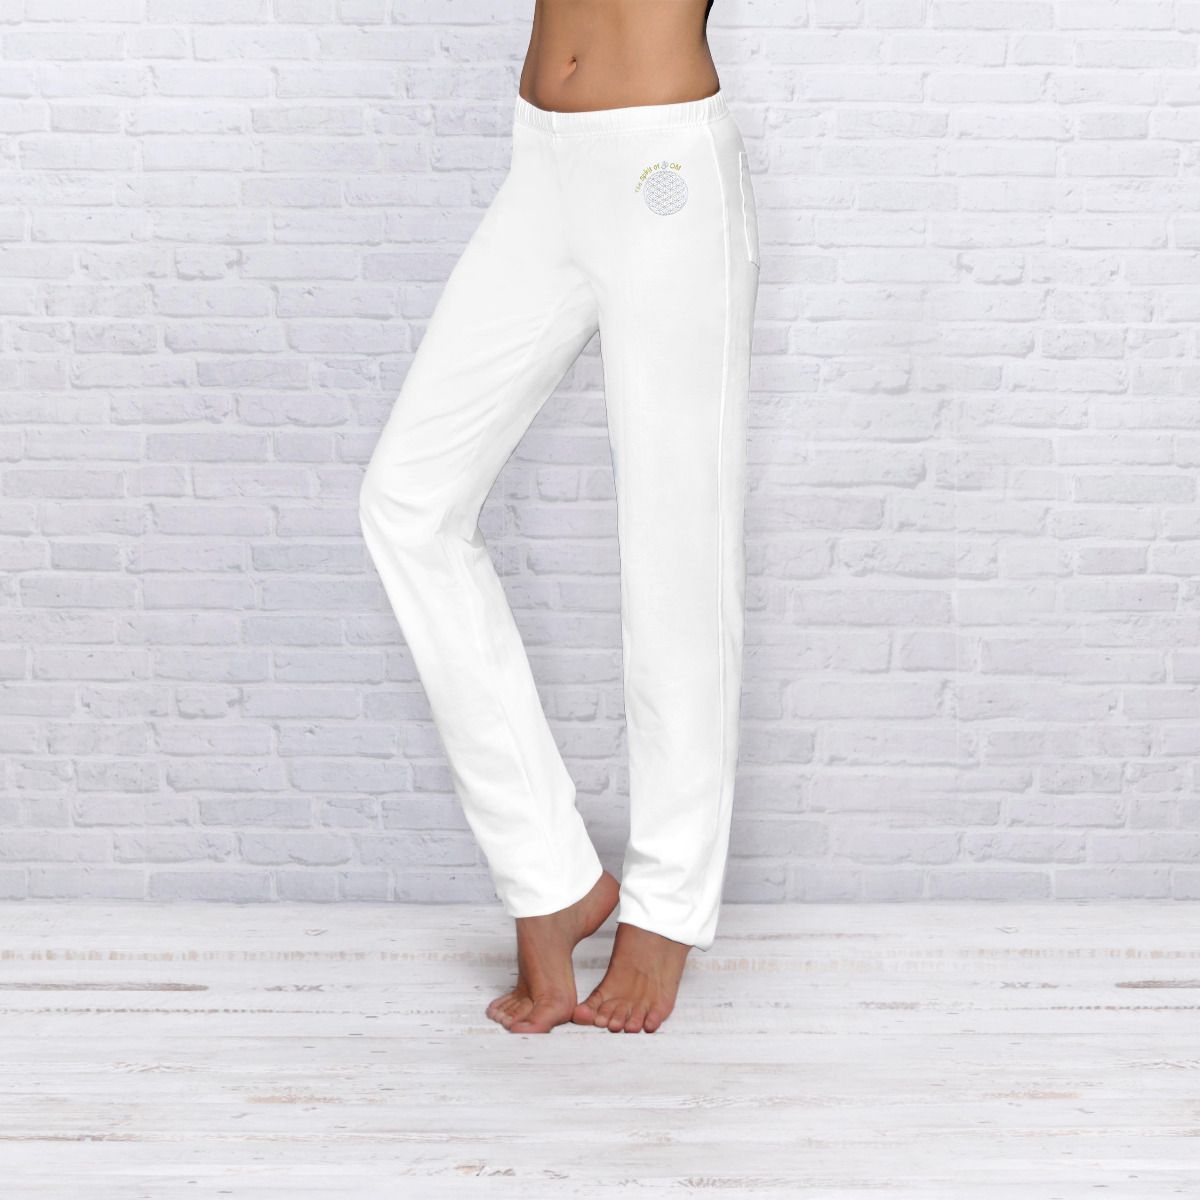 The Spirit of OM wellness kalhoty z bio bavlny dlouhé unisex - bílé Velikost: L